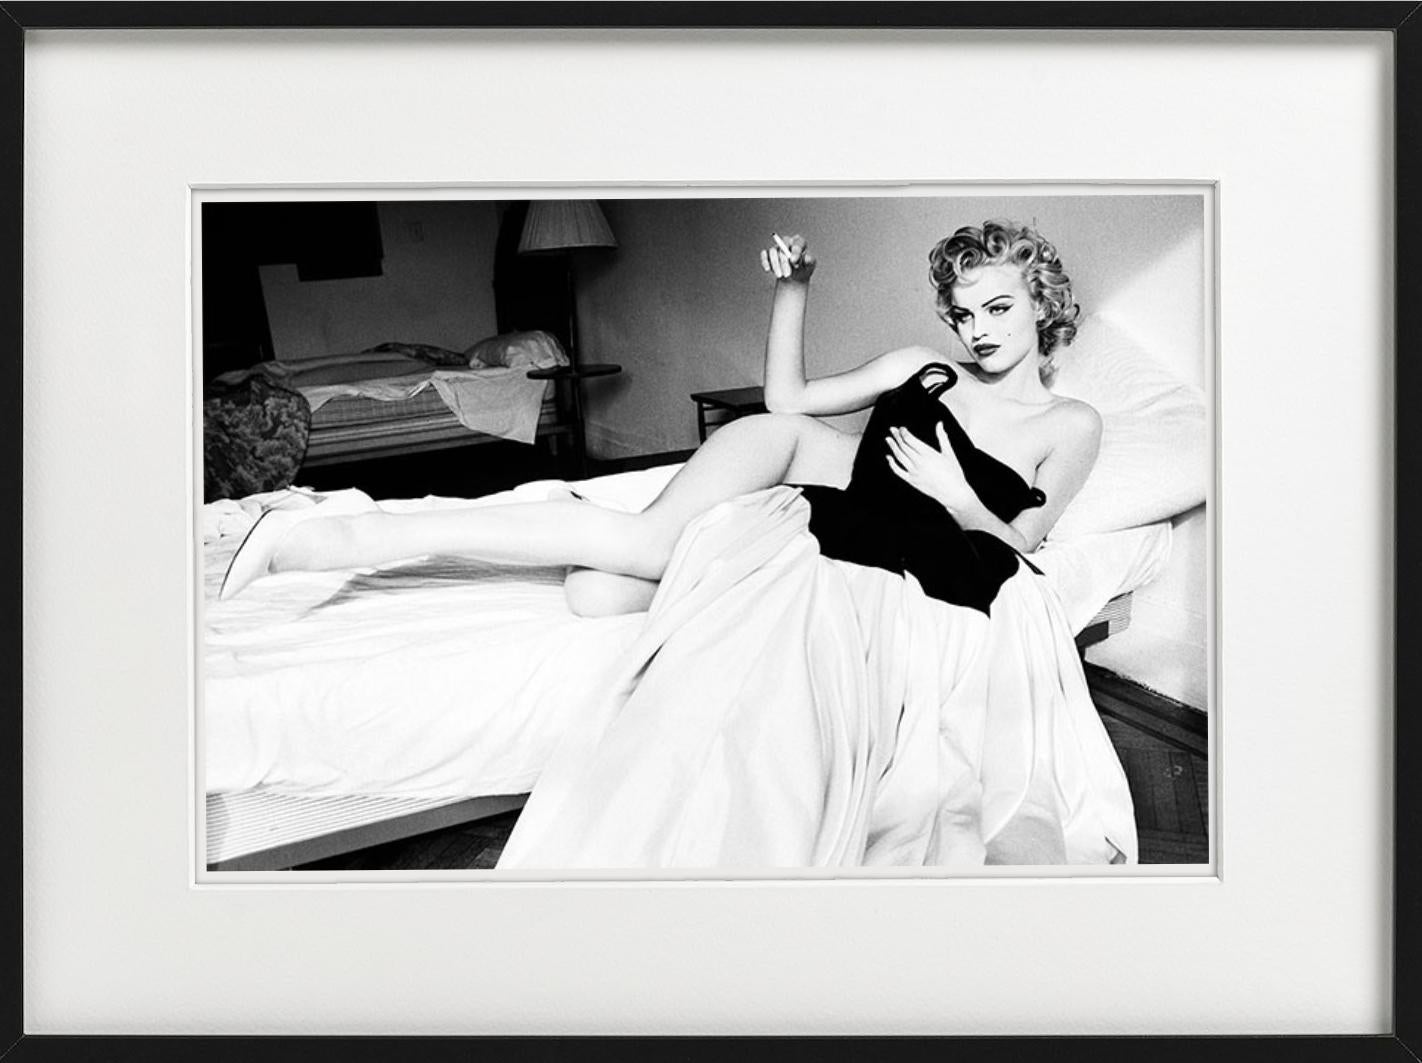 Eva Herzigova, Smoking in Bed - nude Model smoking, fine art photography, 1994 - Contemporary Photograph by Ellen von Unwerth